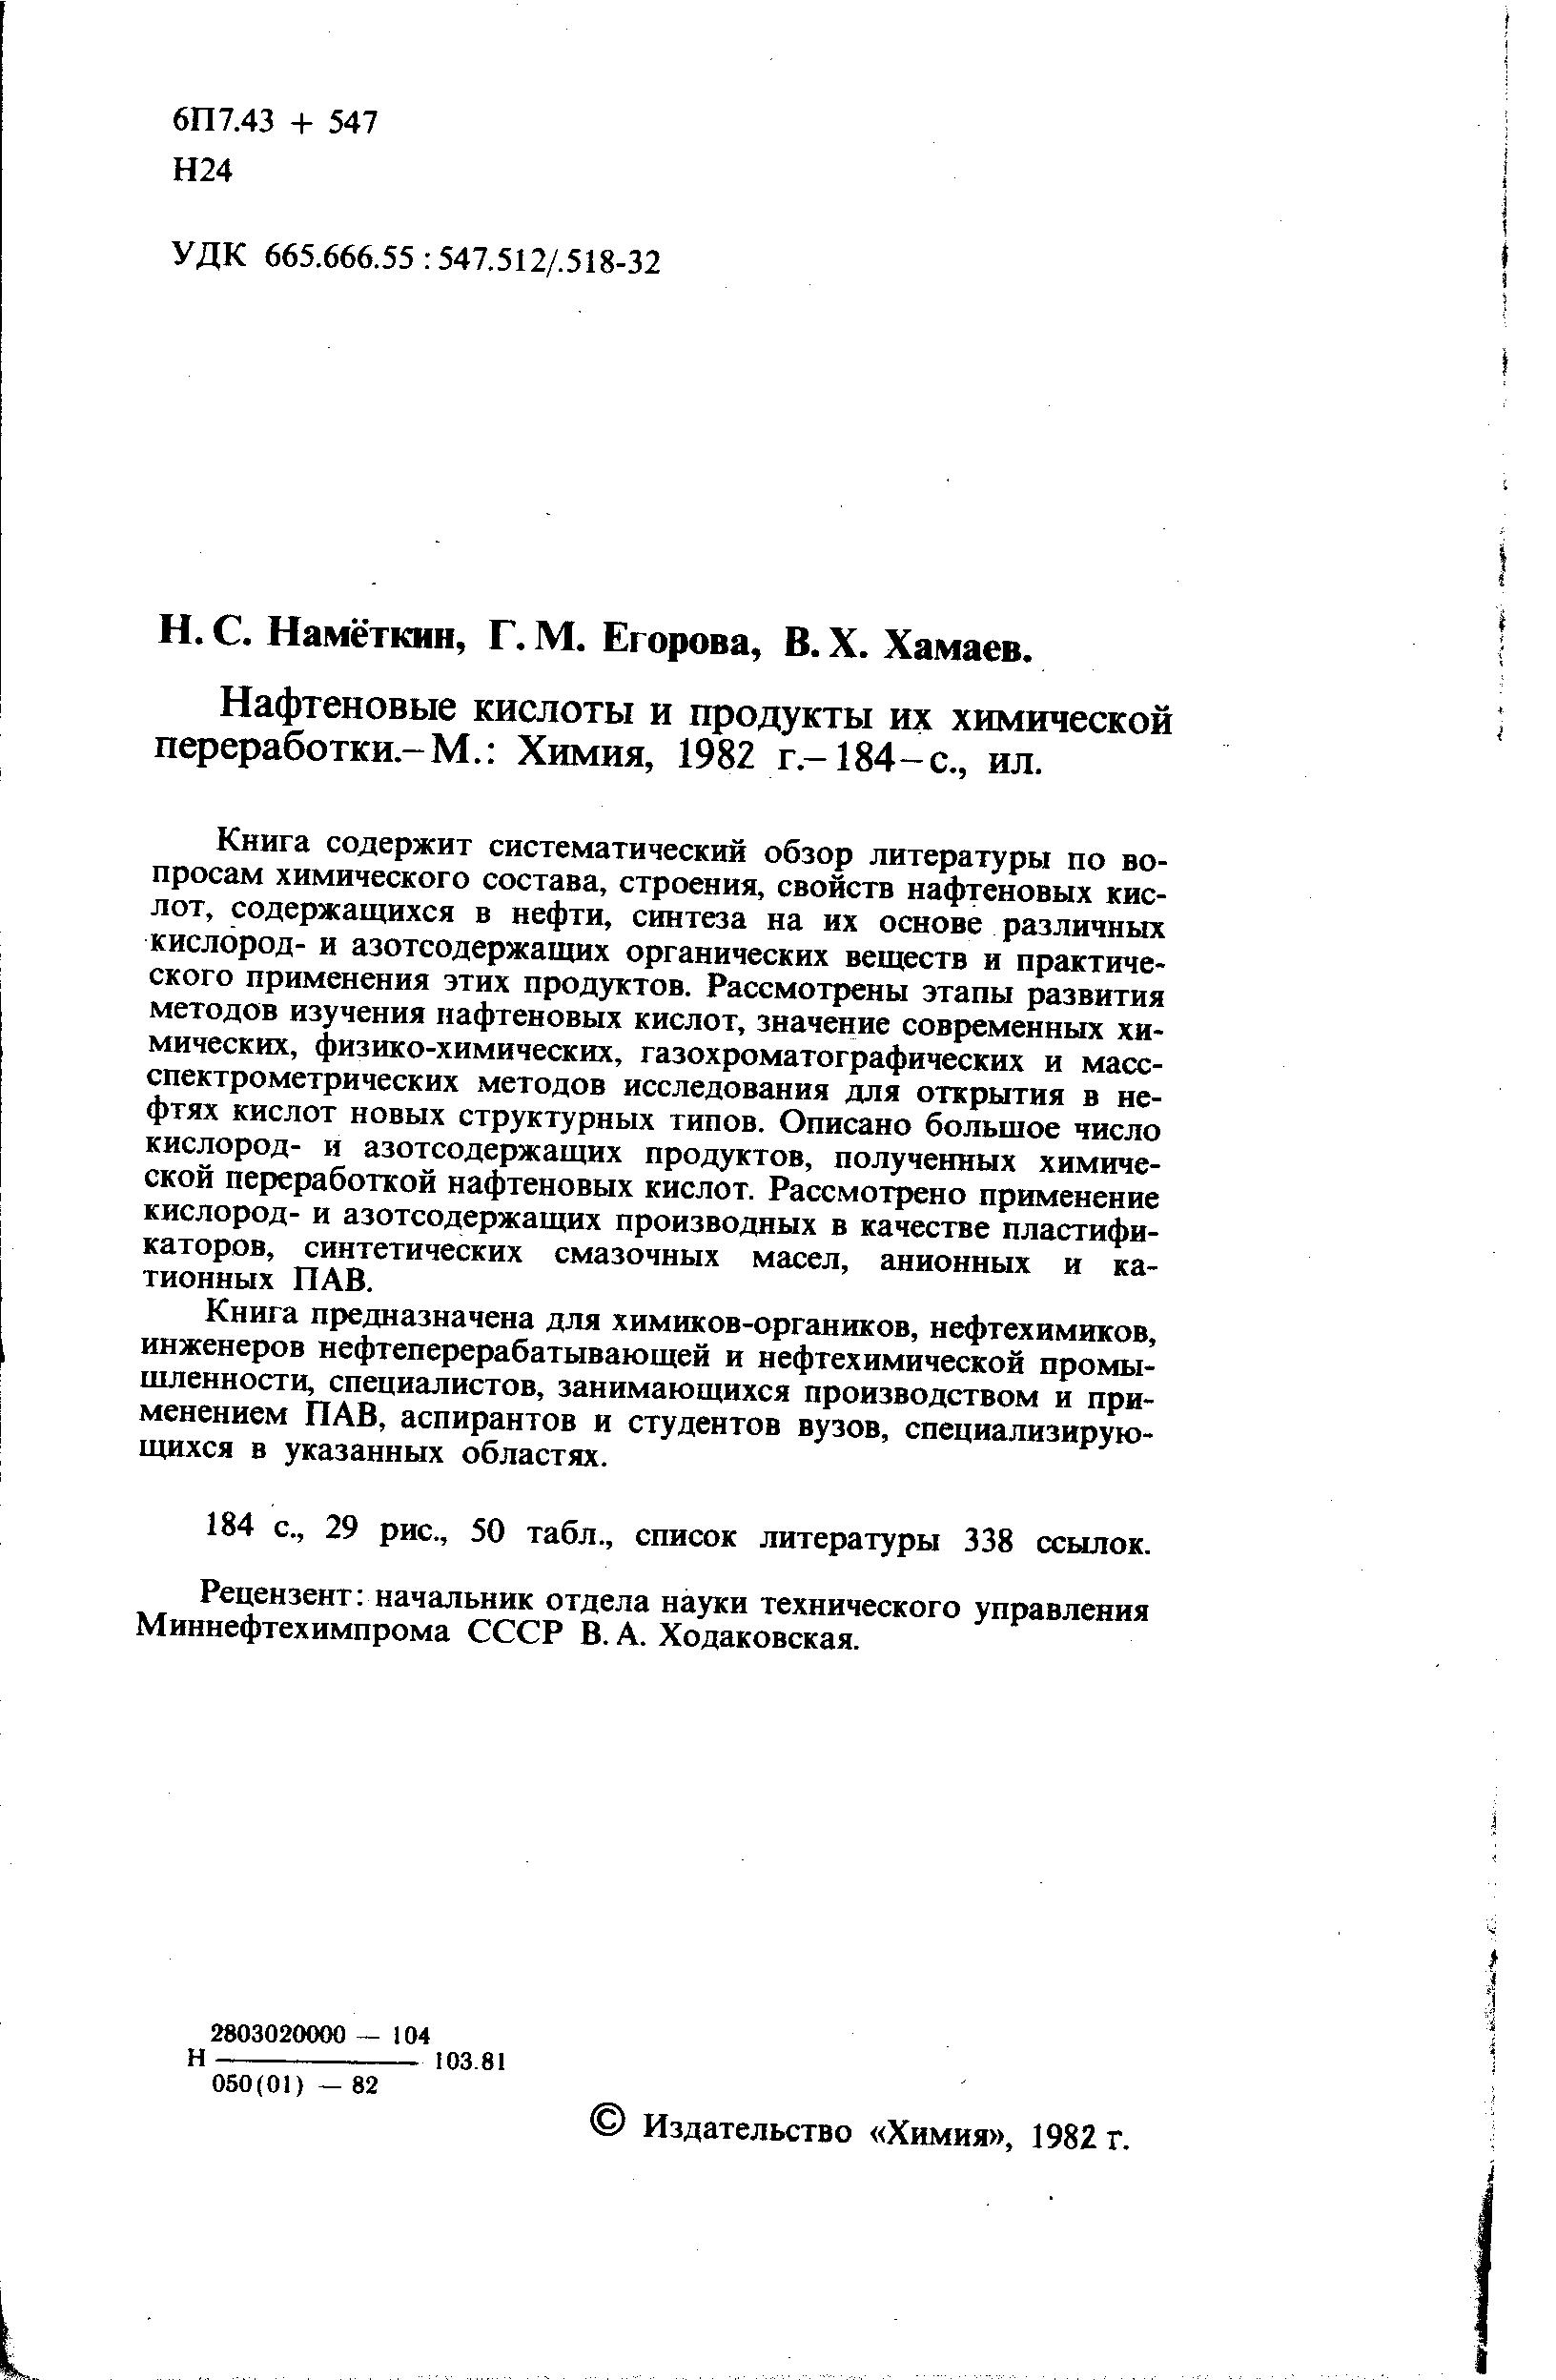 Нафтеновые кислоты и продукты их химической переработки-М. Химия, 1982 г.-184-с., ил.